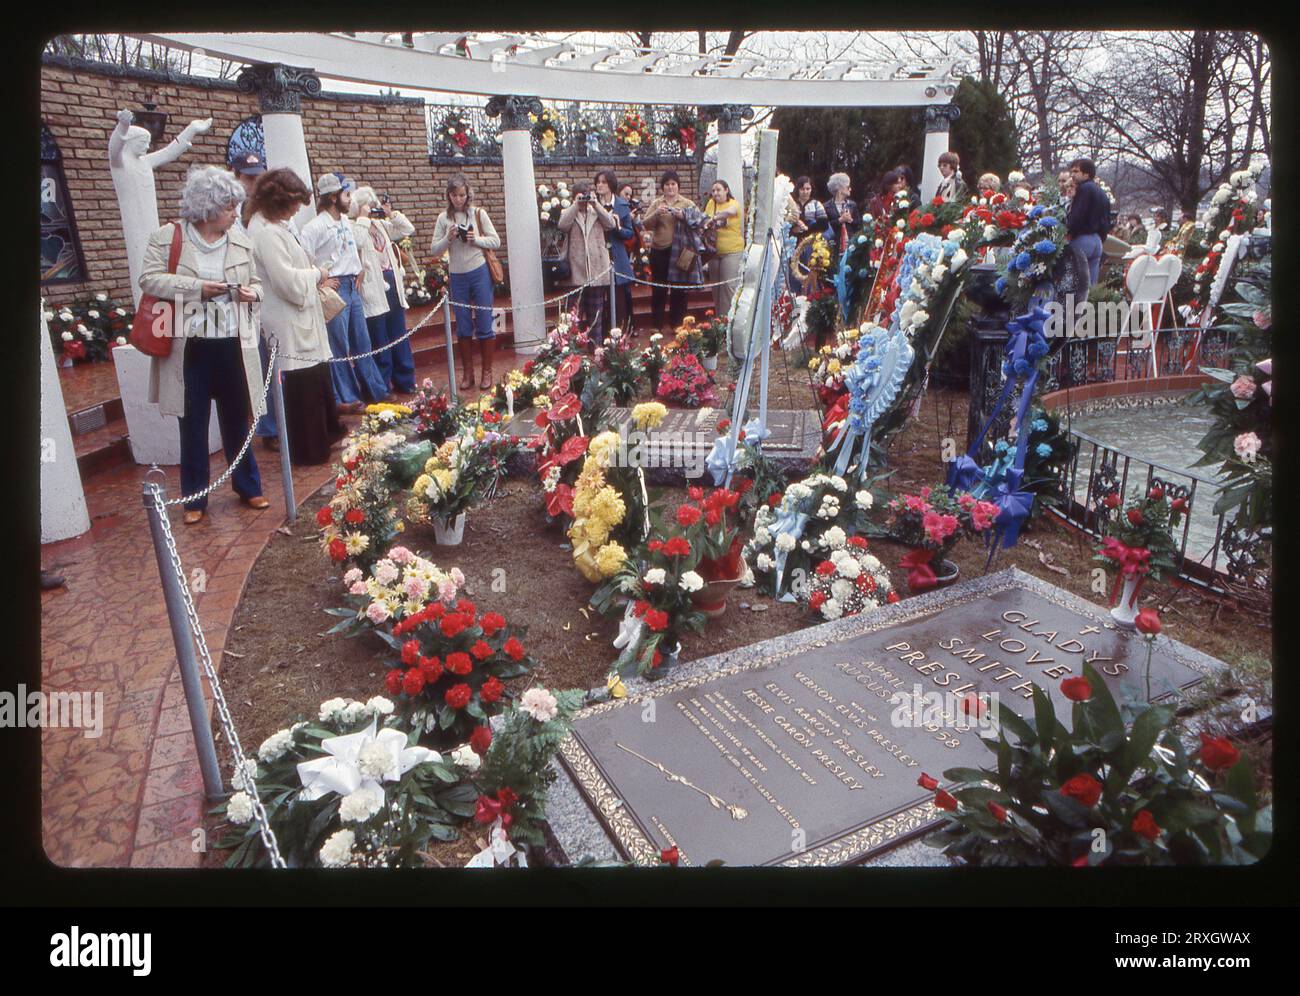 Il primo compleanno di Elvis dopo la sua morte. A Graceland, residenza di Elvis a Memphis, l'8 gennaio 1978 in un giorno di drizzly. La lapide di sua madre è in primo piano. Foto Stock